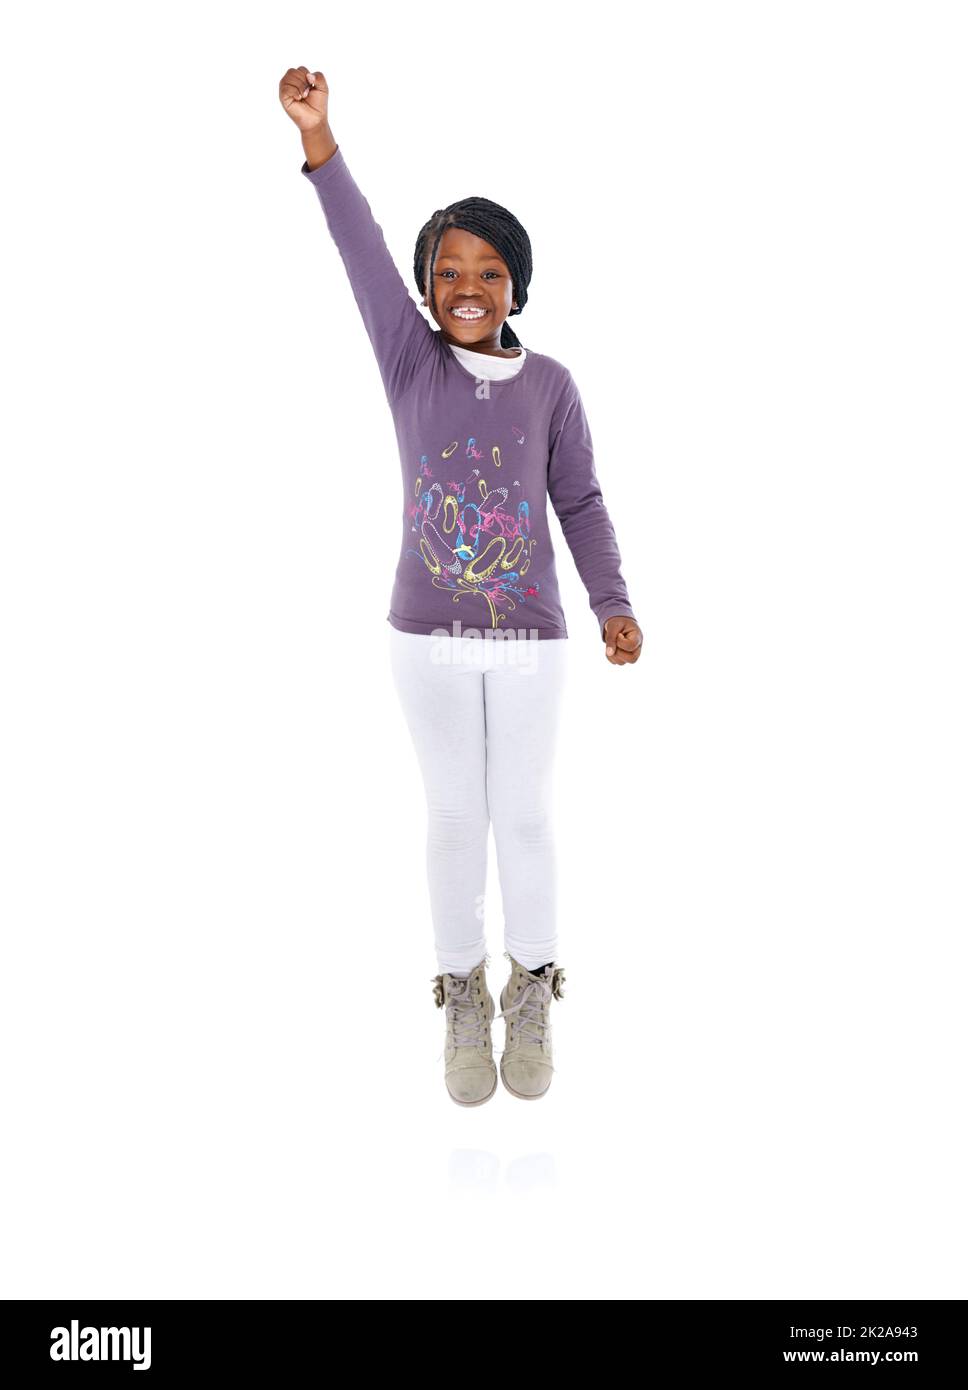 Ich bin ein Erfolg. Porträt eines afroamerikanischen Mädchens mit dem Arm, der triumphierend angehoben wurde. Stockfoto